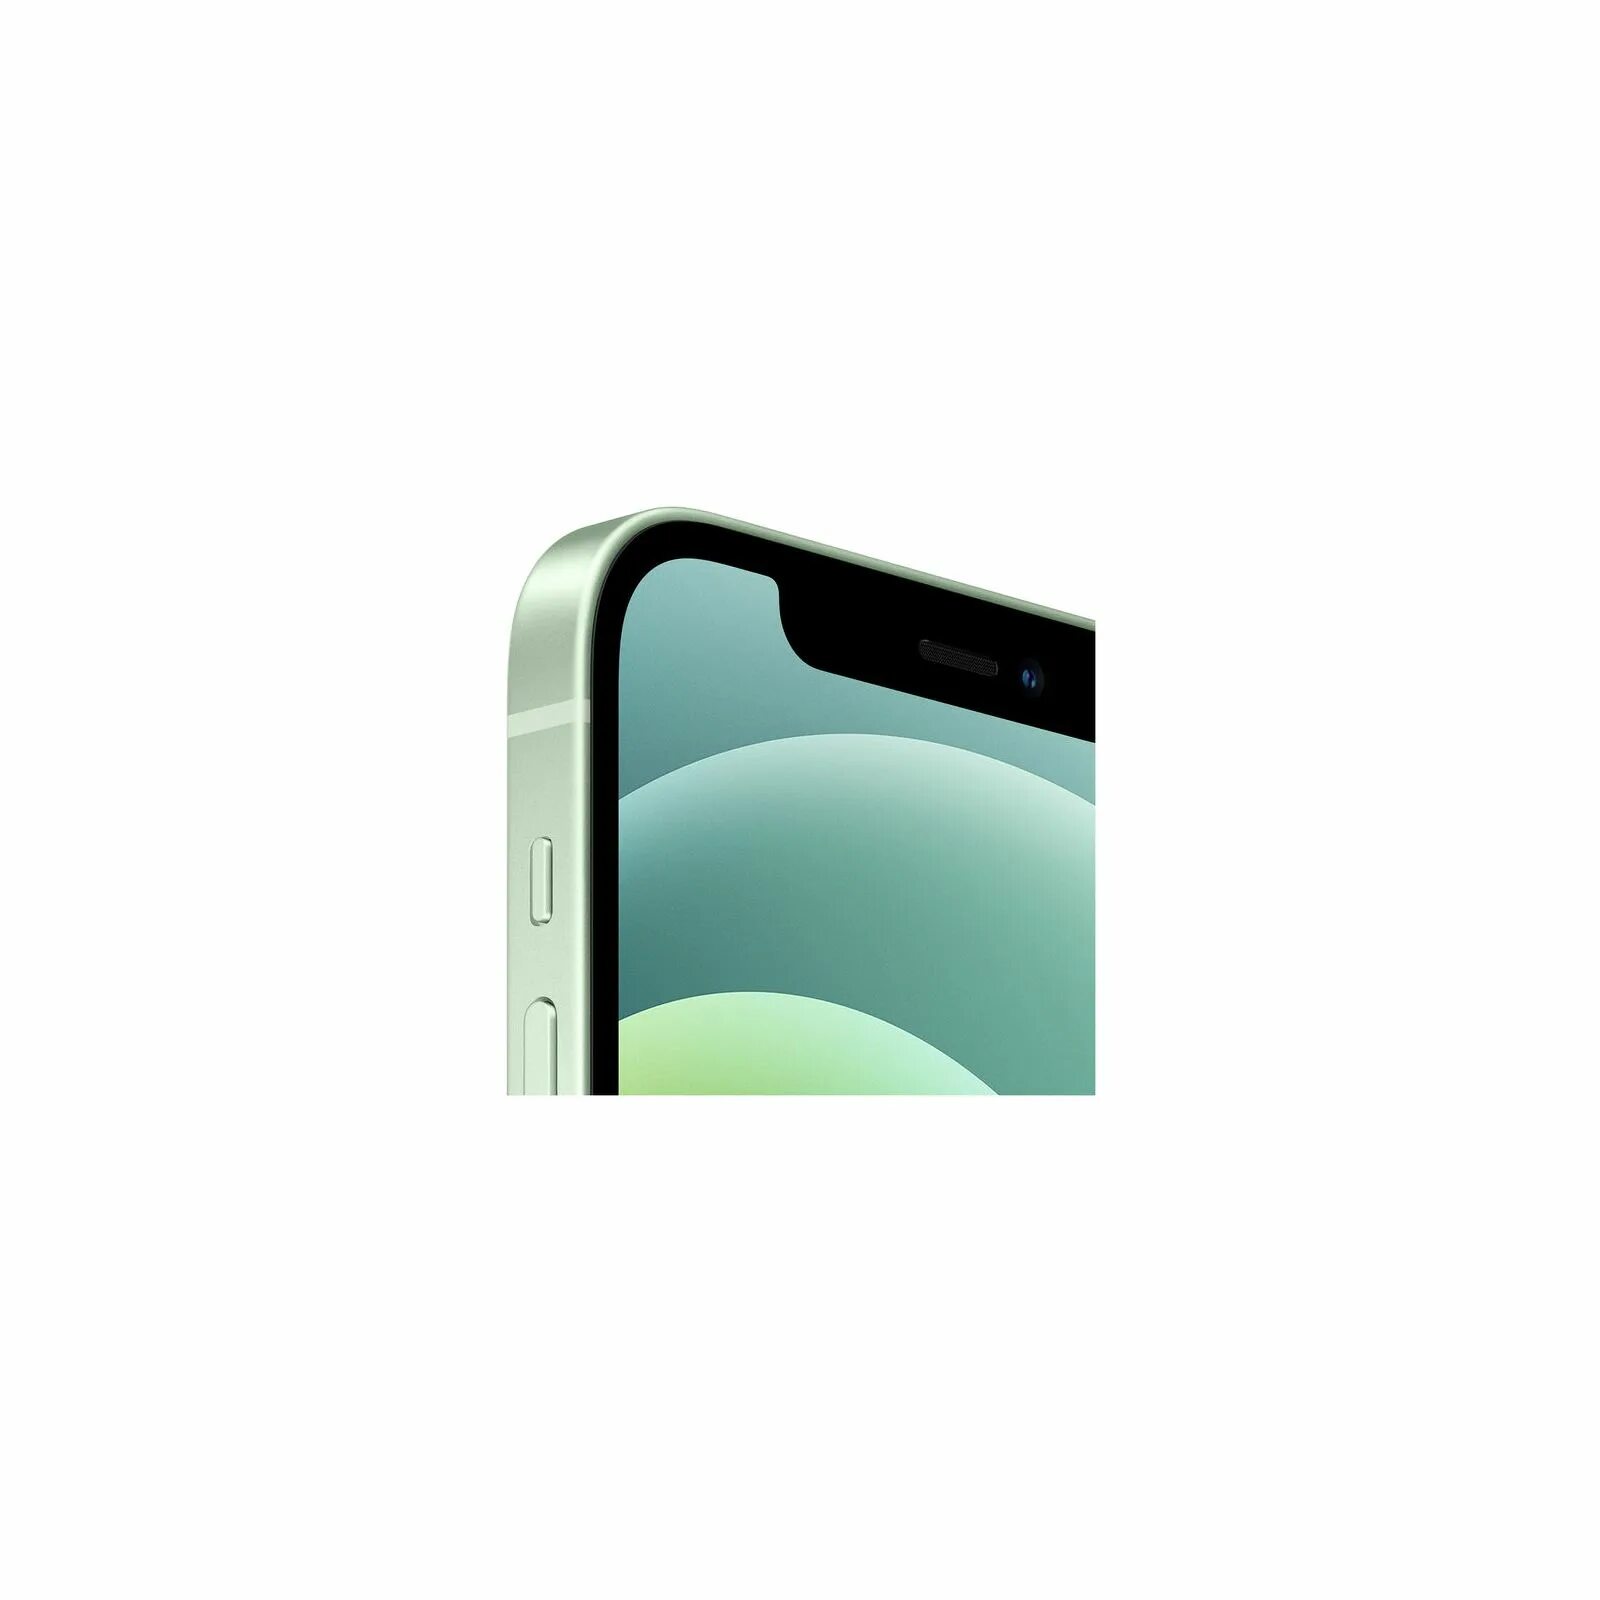 Iphone 12 Mini 128gb. Iphone 12 128gb Green. Iphone 12 Mini 128gb Green. Iphone 12 Mini 256 зеленый. 12 mini 128gb купить